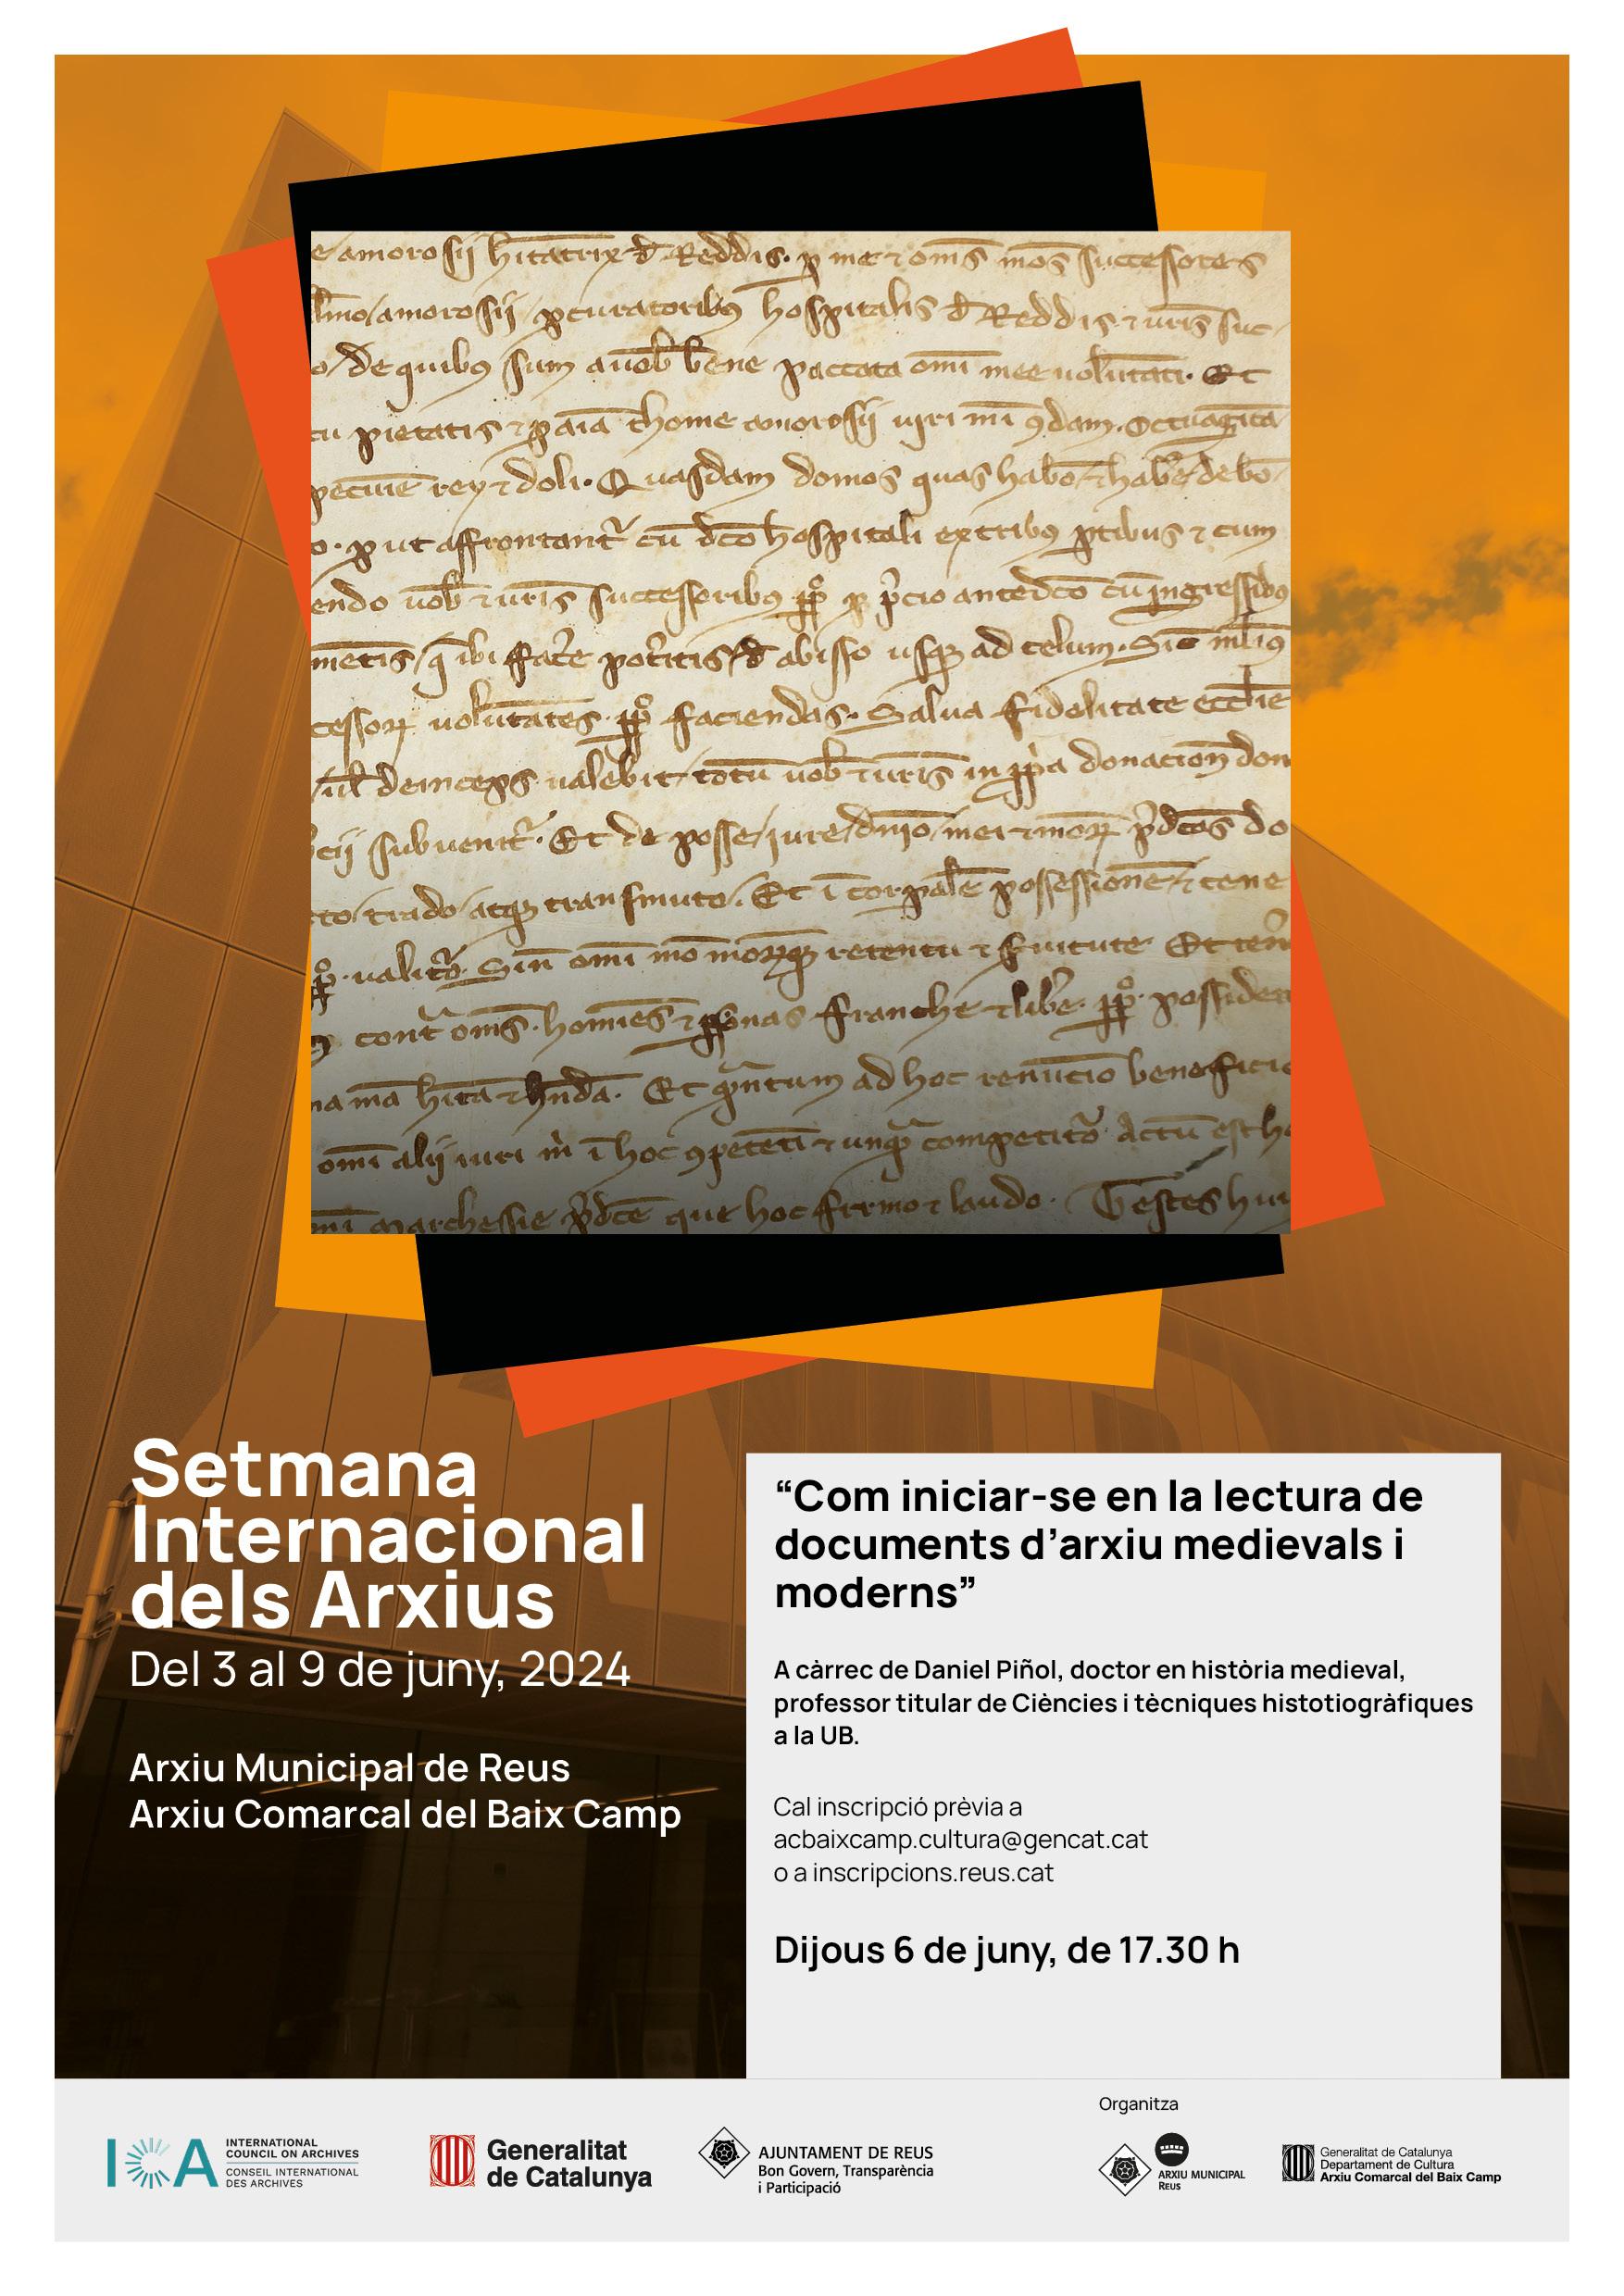 Conferència «Com iniciar-se en la lectura de documents d'arxiu medievals i moderns”, a càrrec del Dr. Daniel Piñol Alabart